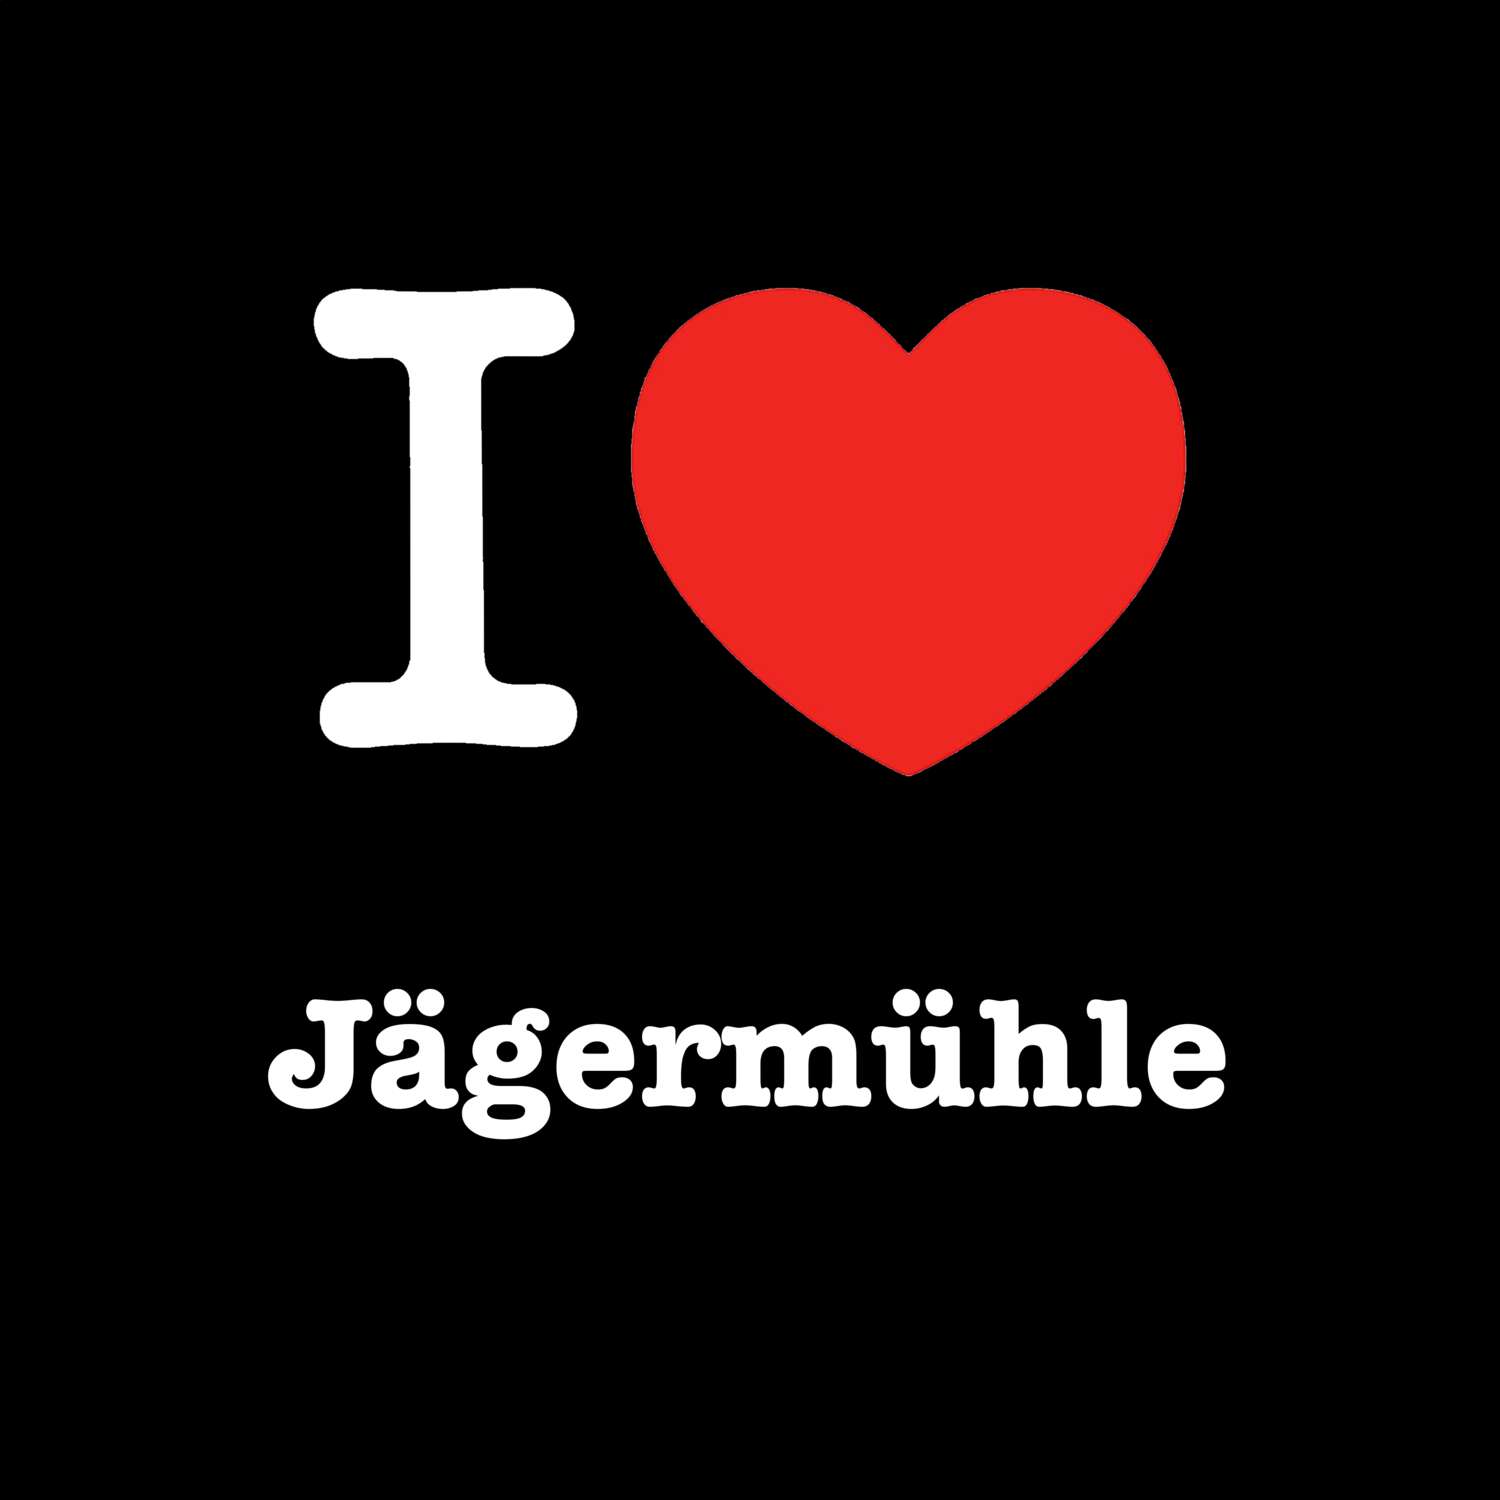 Jägermühle T-Shirt »I love«